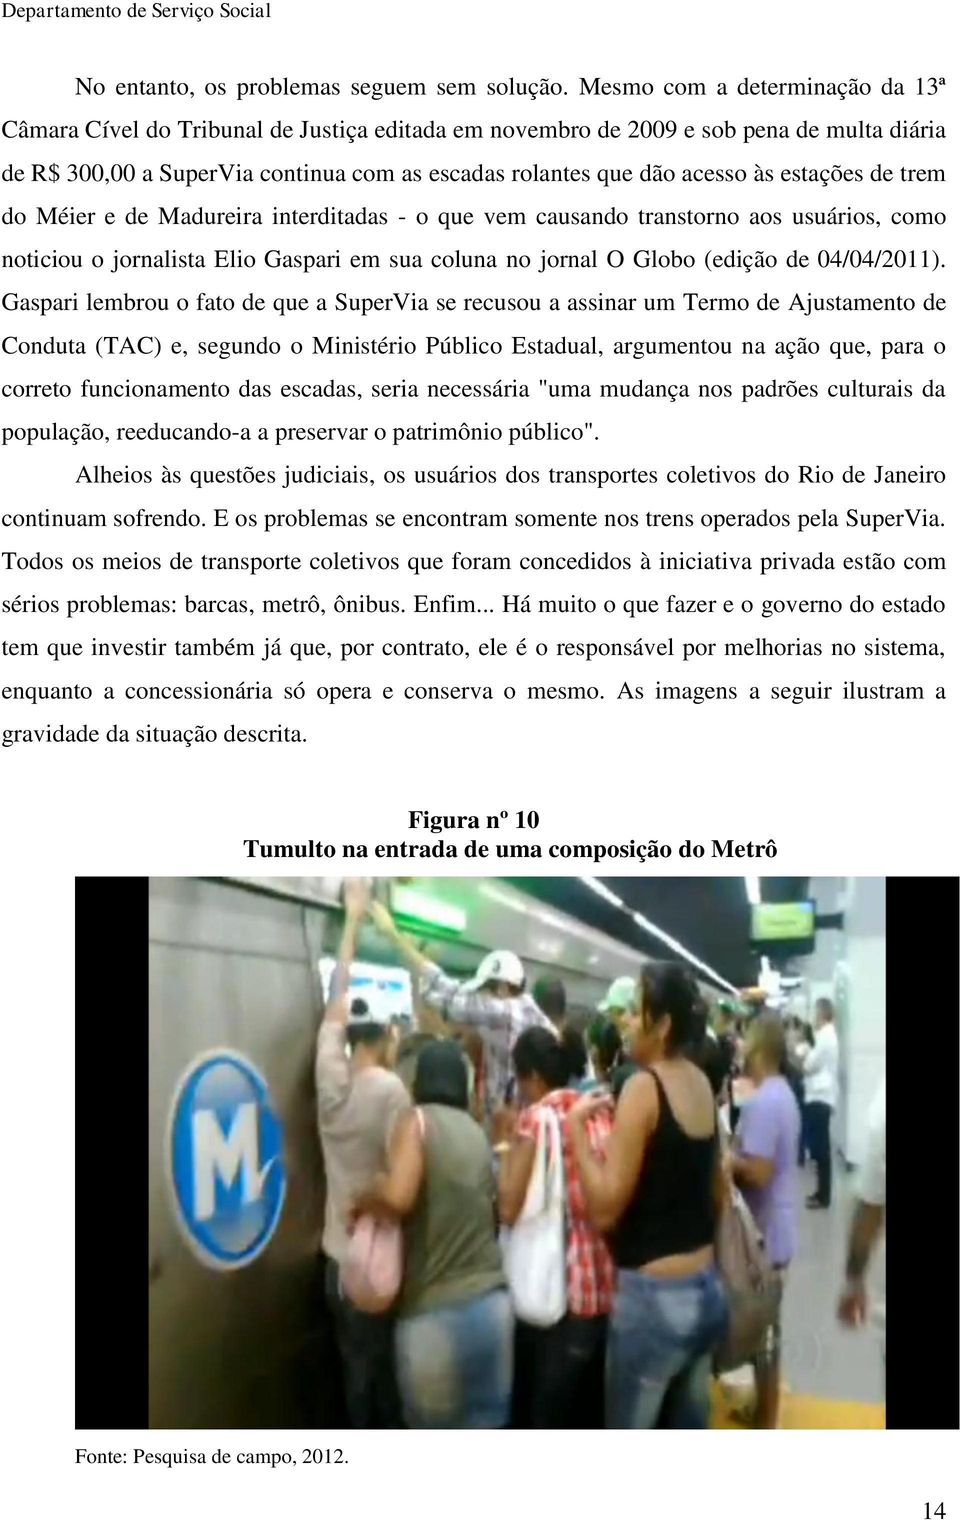 estações de trem do Méier e de Madureira interditadas - o que vem causando transtorno aos usuários, como noticiou o jornalista Elio Gaspari em sua coluna no jornal O Globo (edição de 04/04/2011).